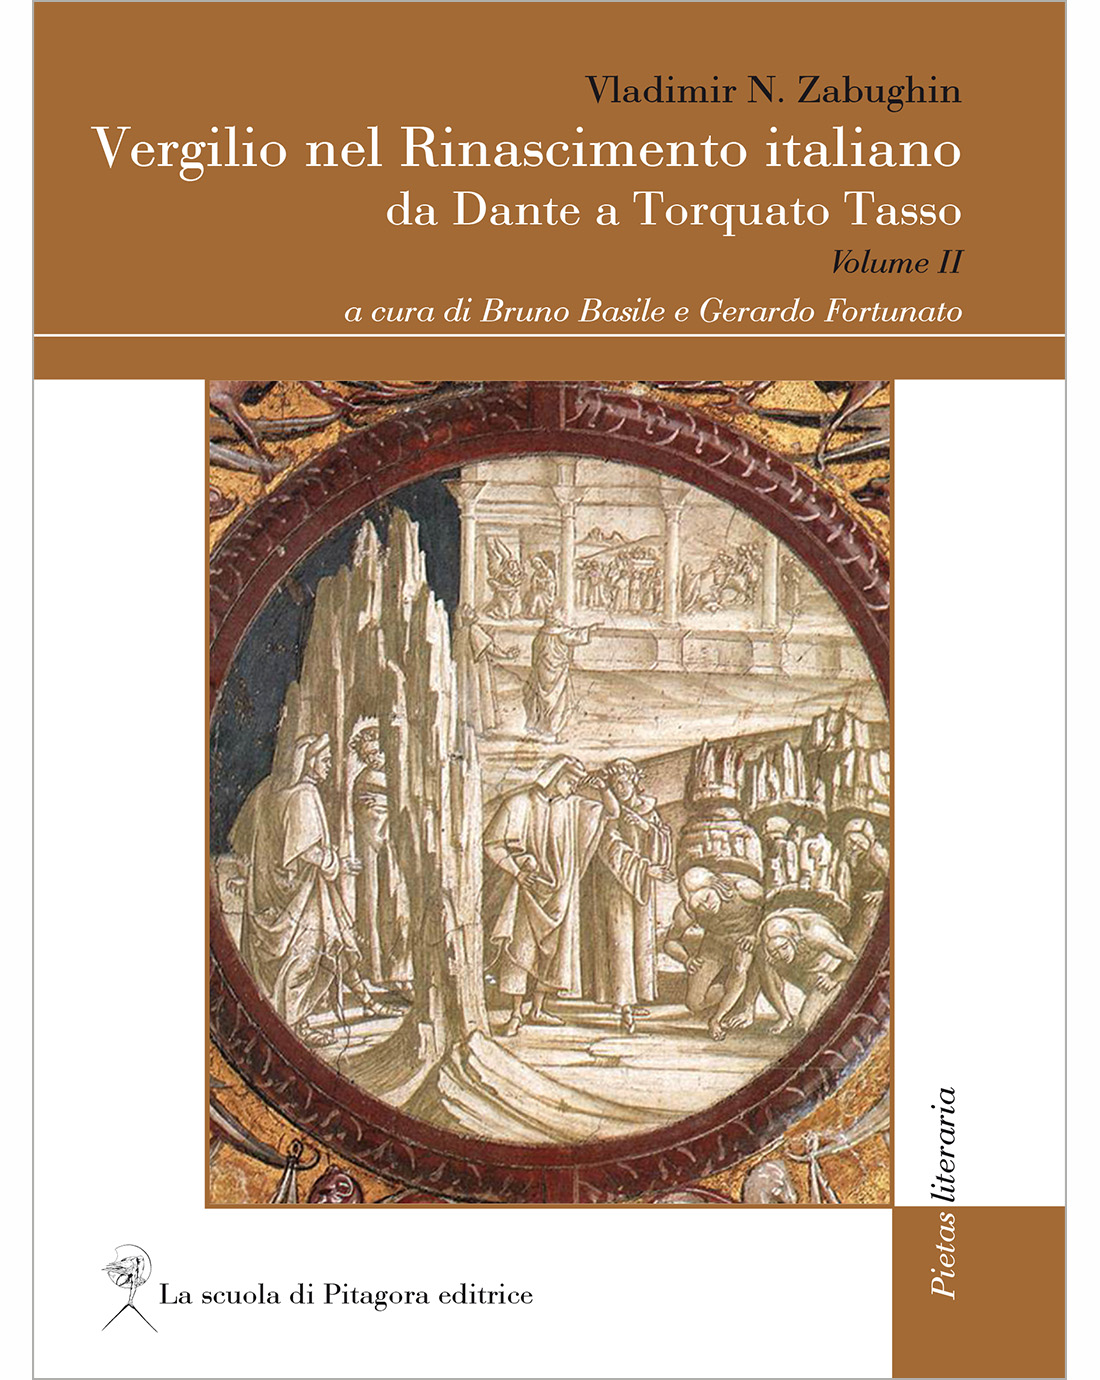 Vergilio nel Rinascimento italiano II (e-book)